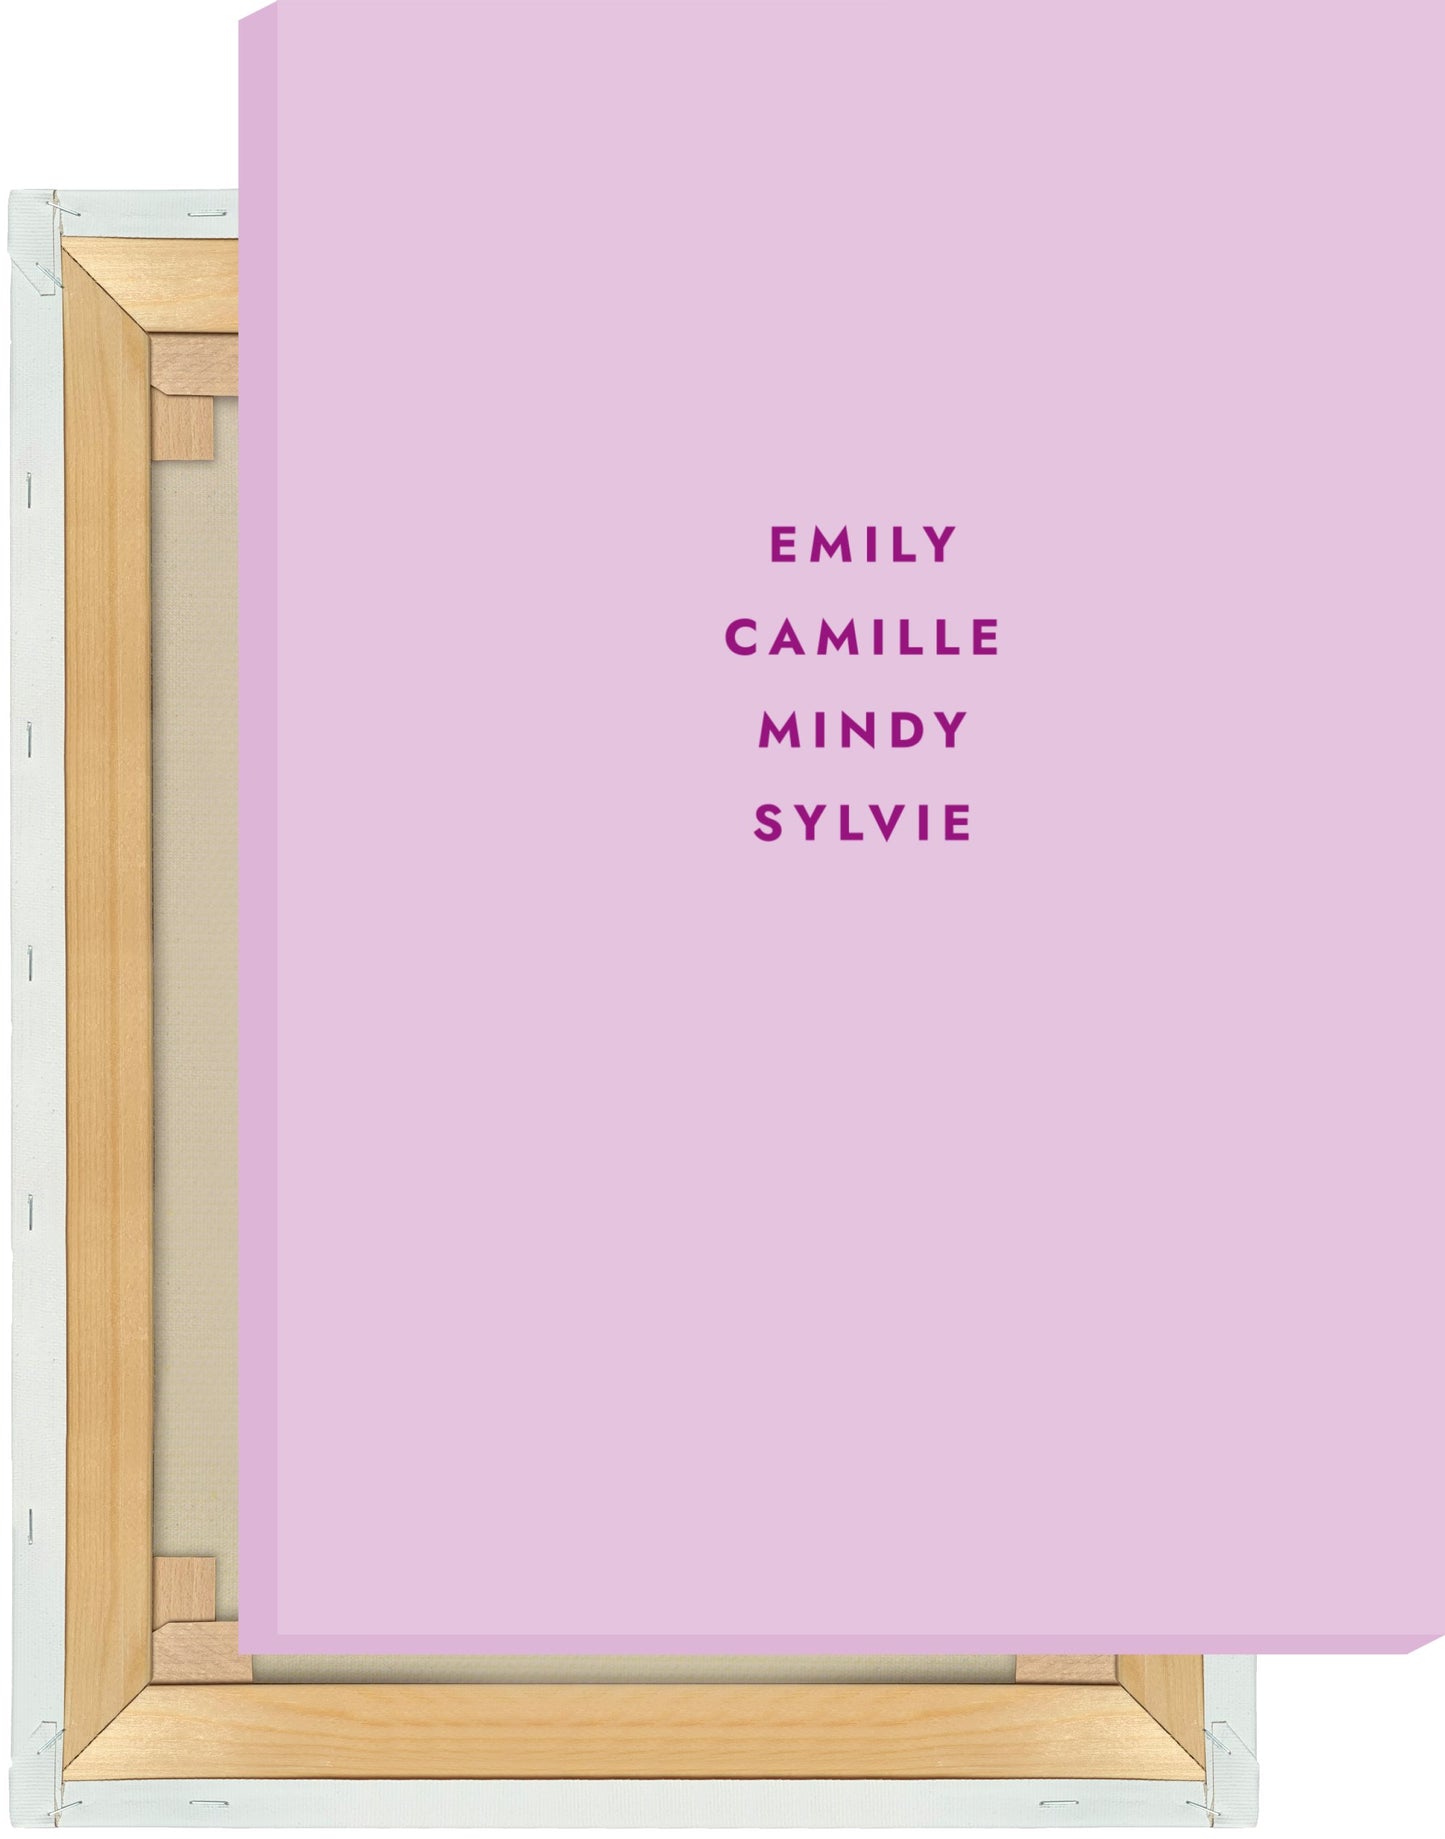 Leinwand Emily in Paris - Emily, Camille, Mindy, Sylvie